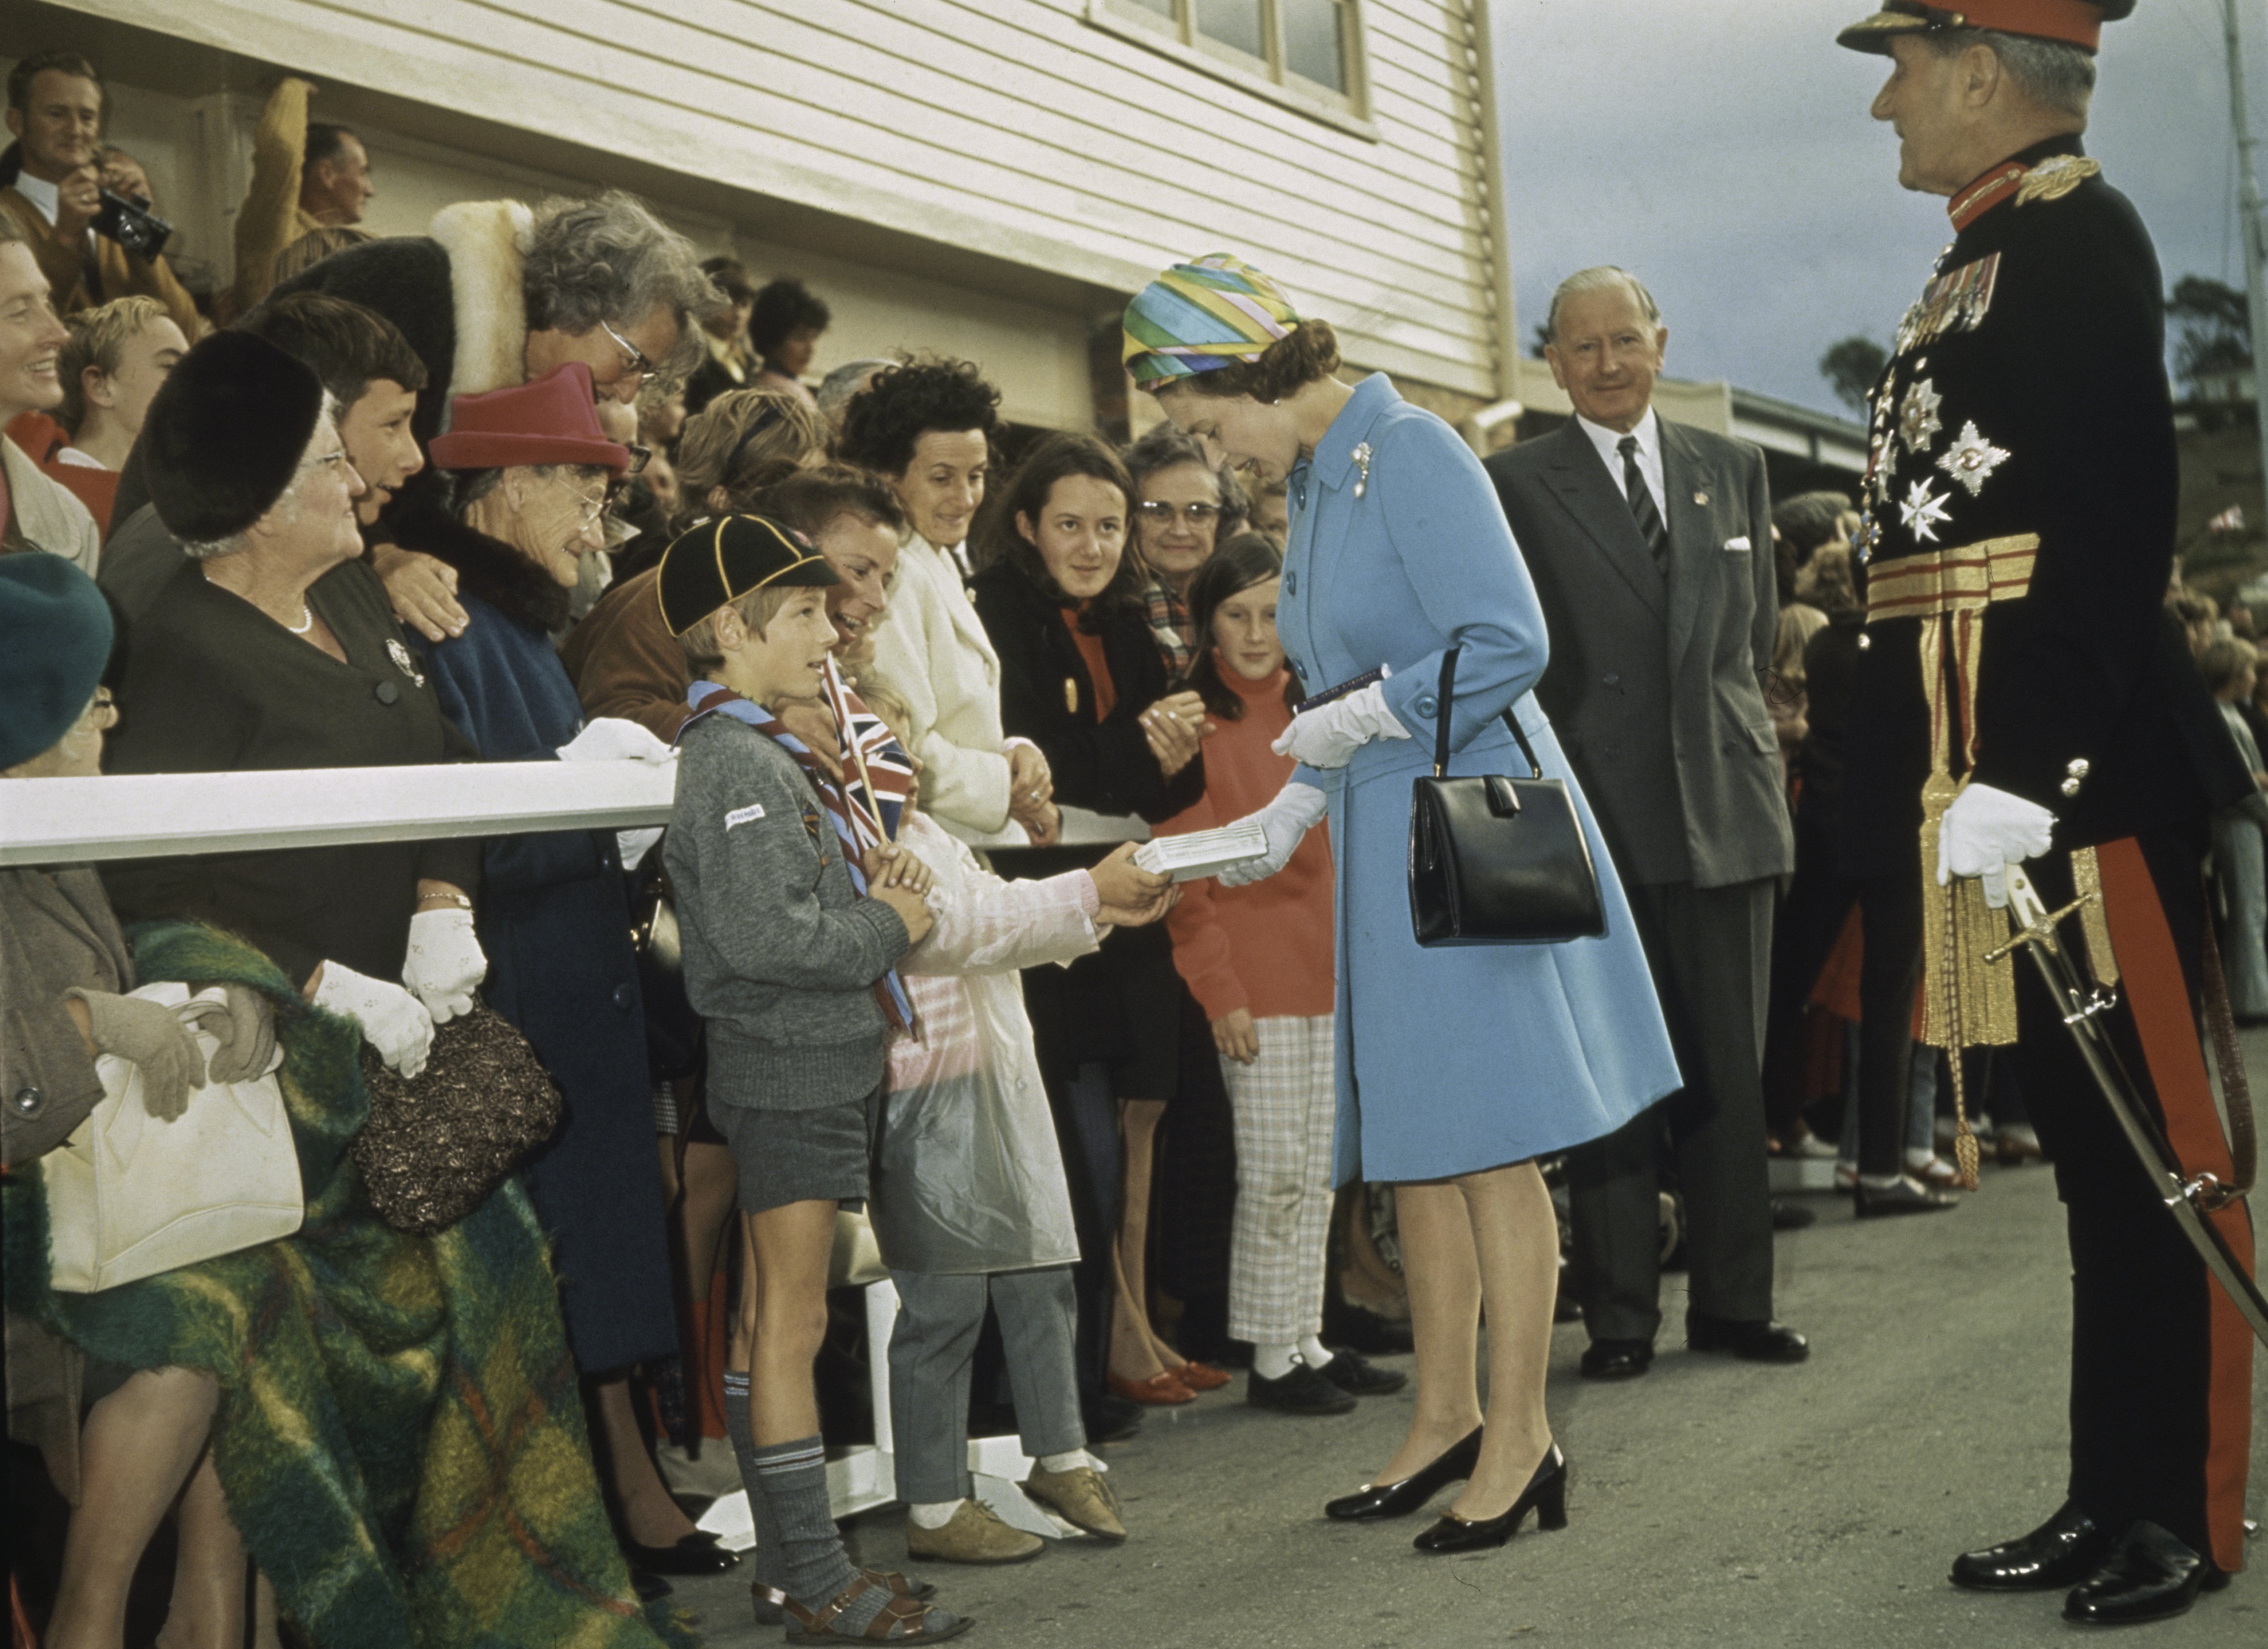 Reina Elizabeth en 1970 en Tasmania saludando a la multitud. | Foto: Getty Images